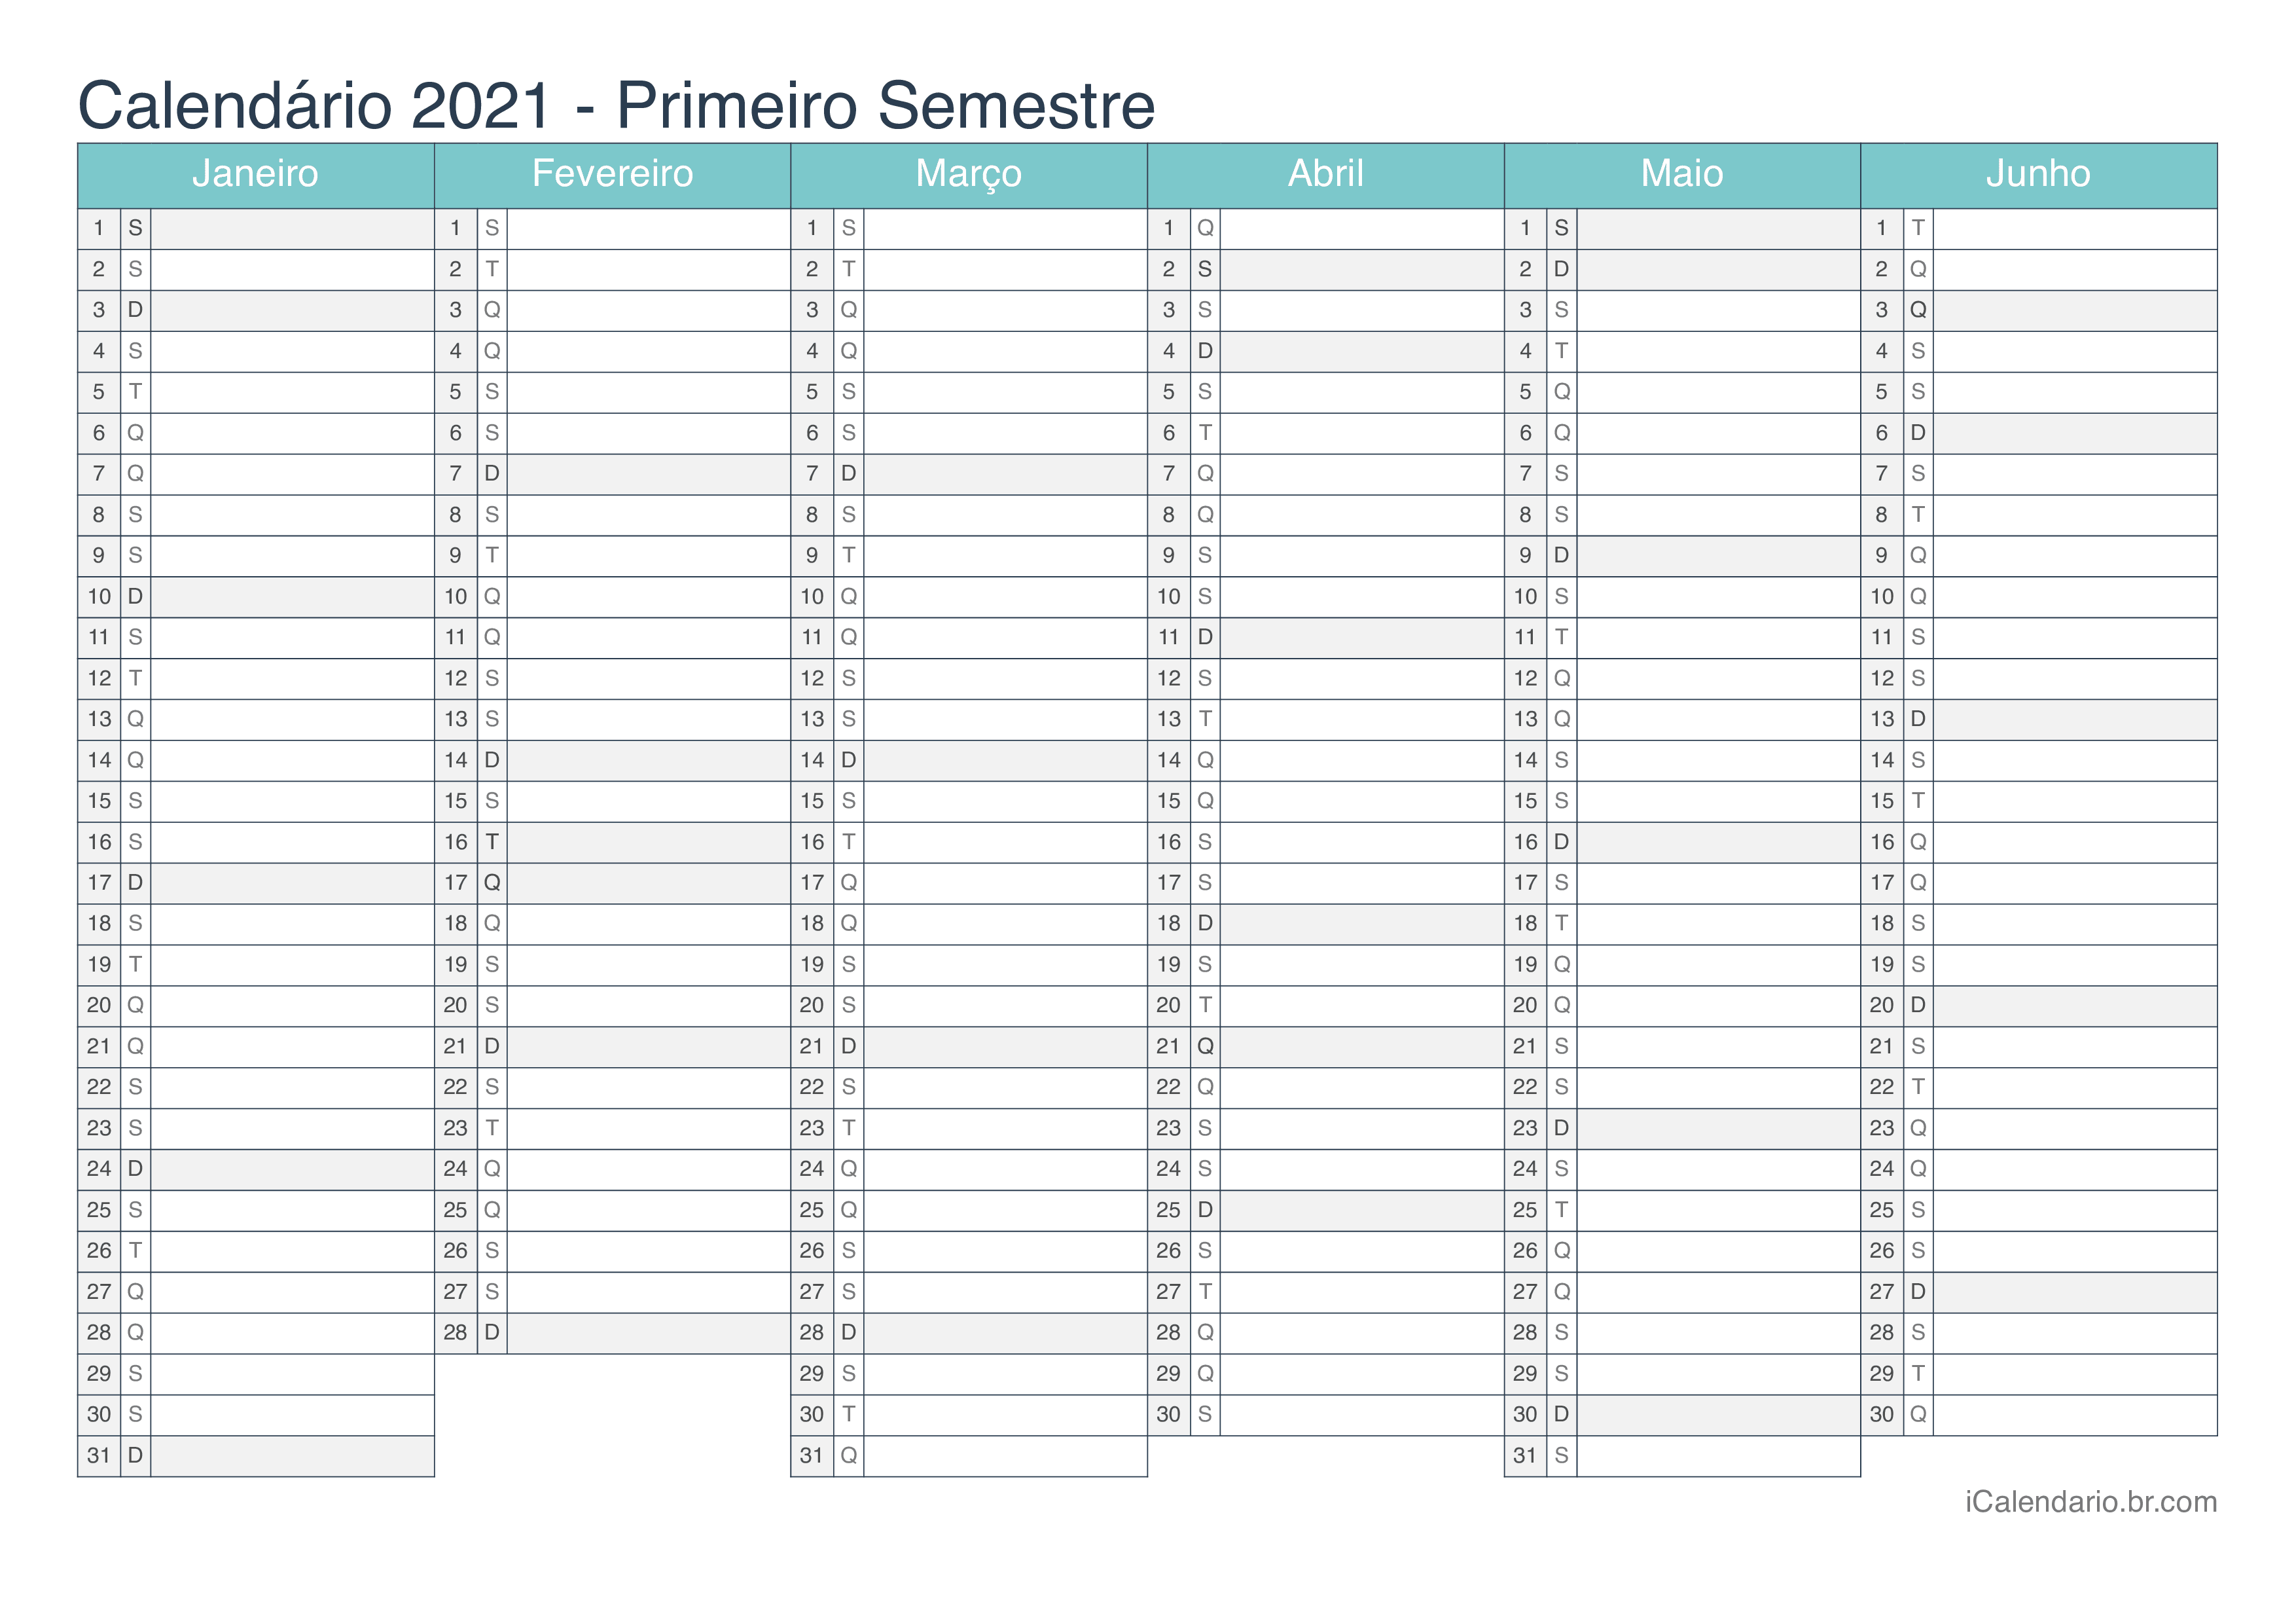 Calendário por semestre 2021 - Turquesa